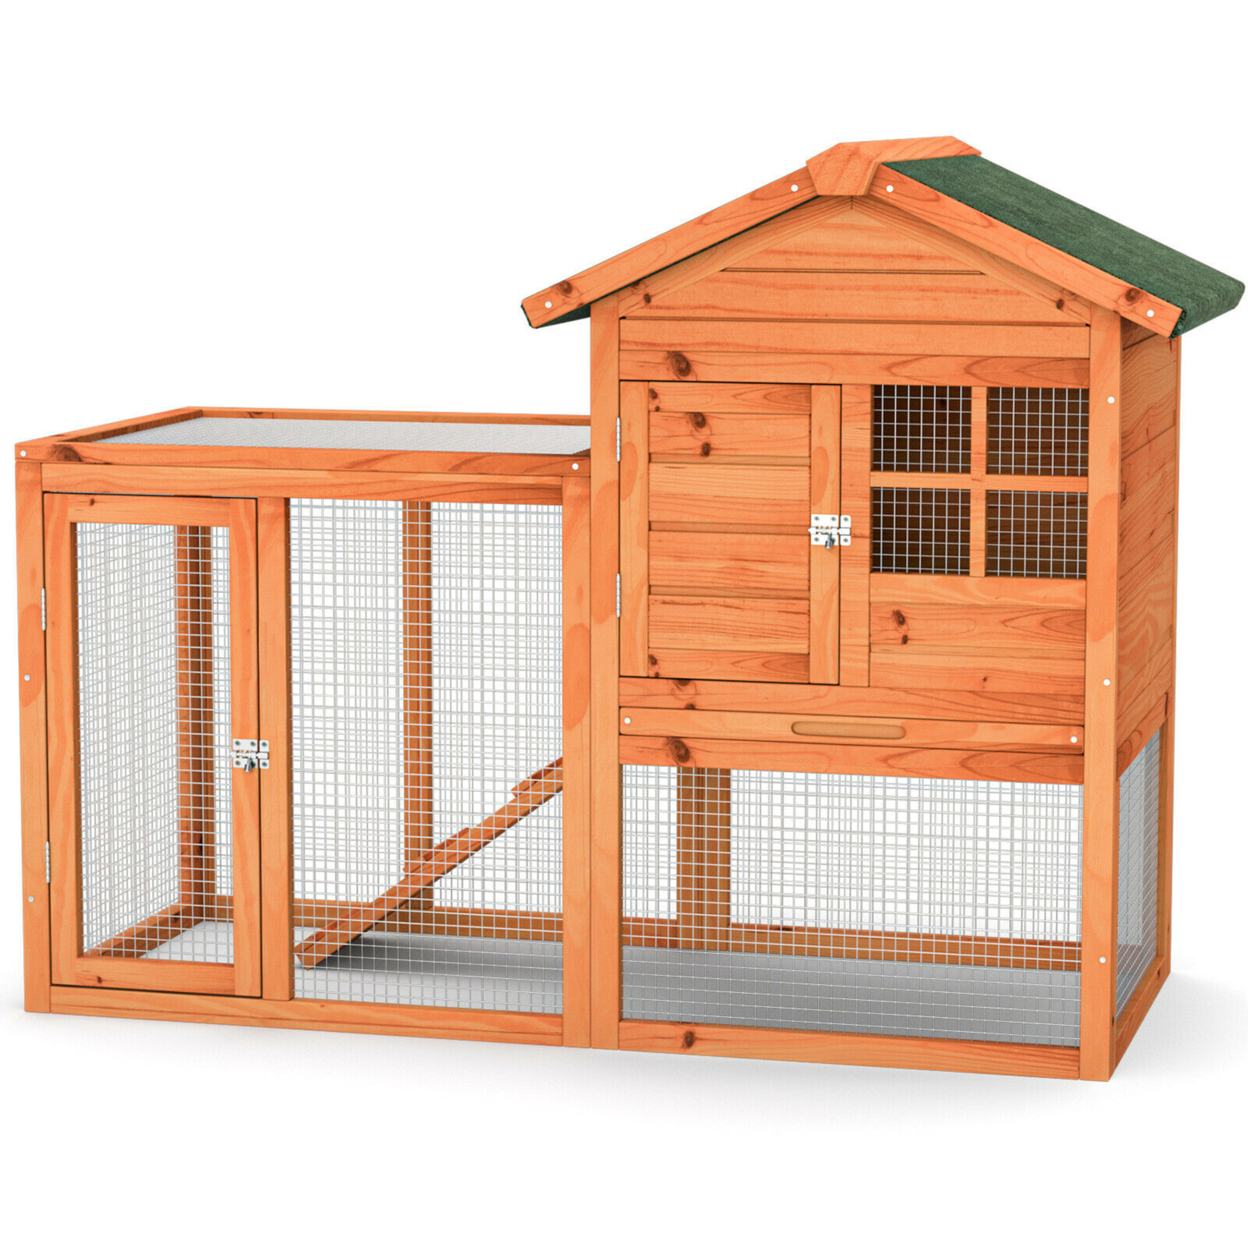 Wooden Chicken Coop Outdoor & Indoor Small Rabbit Hutch W/ Run - Natural